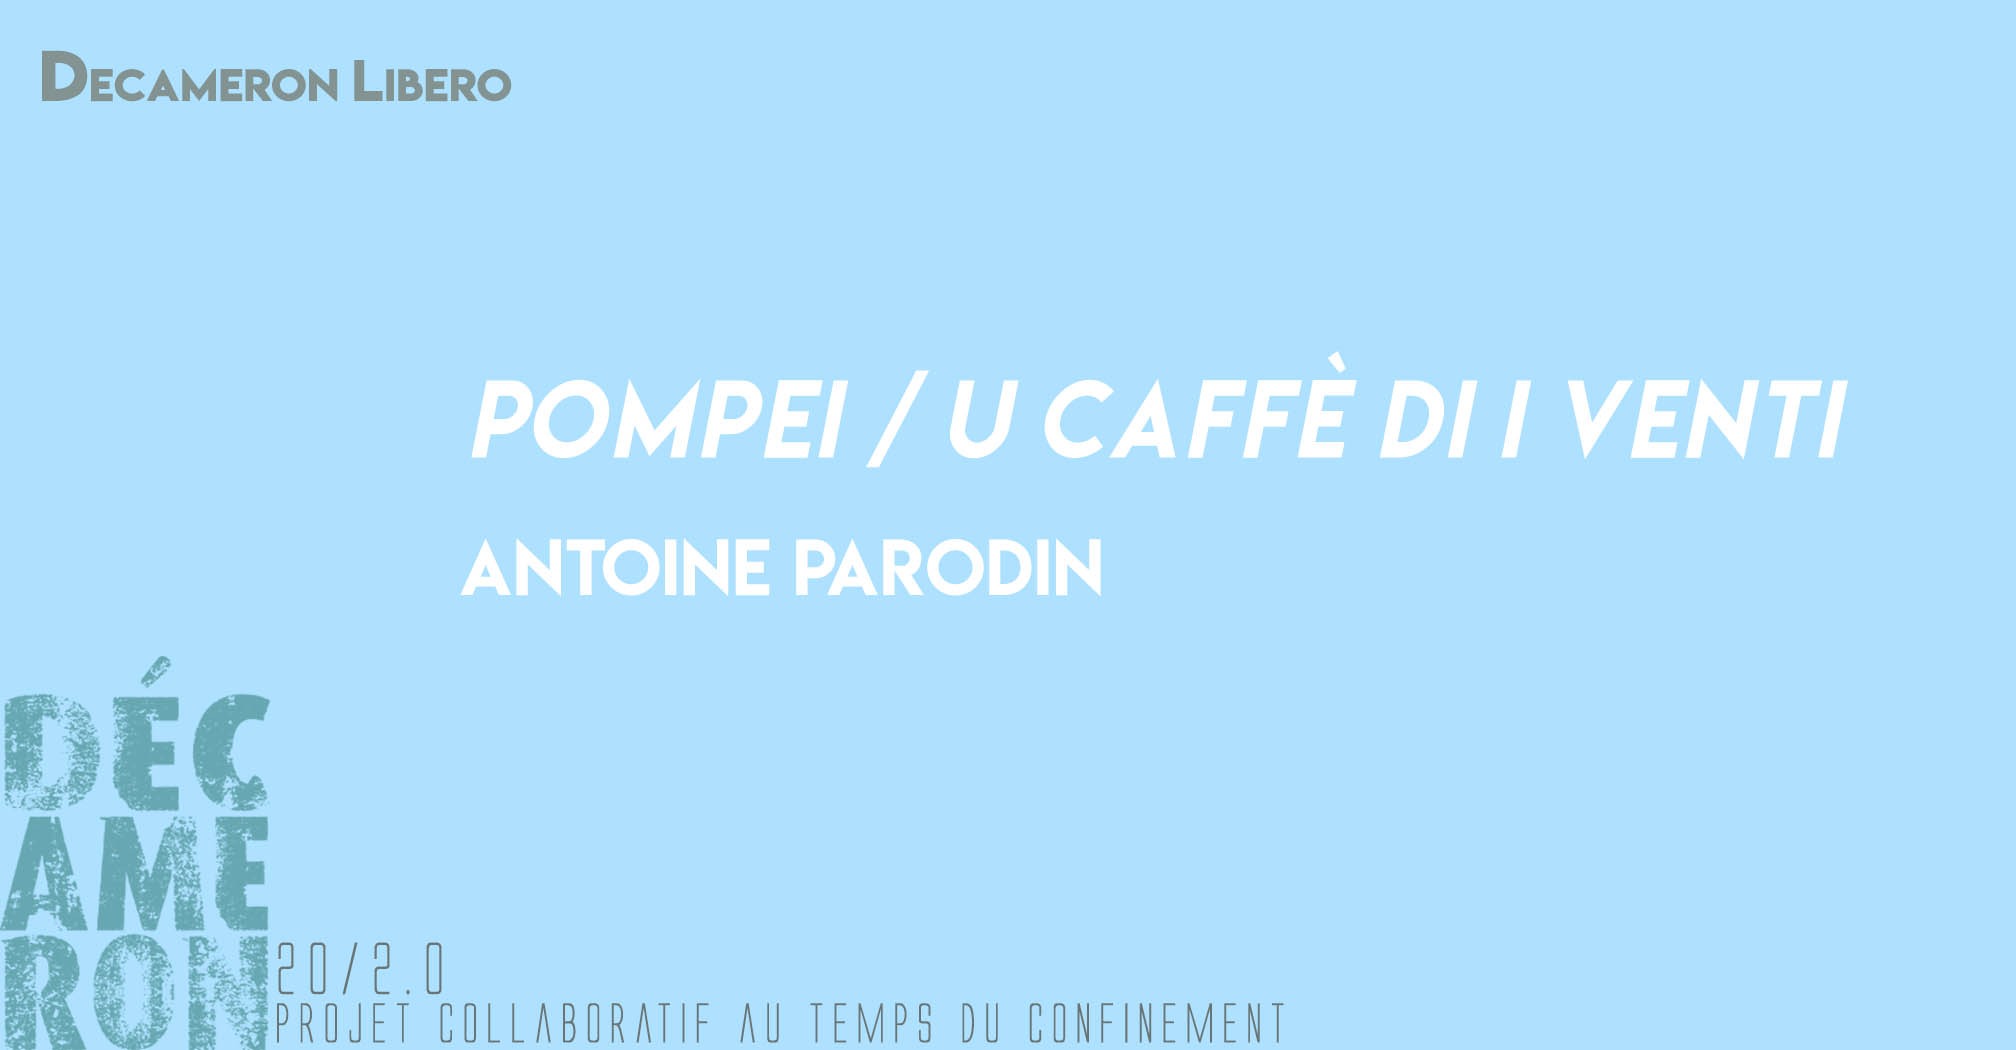 Pompei / U caffè di i venti - Antoine Parodin